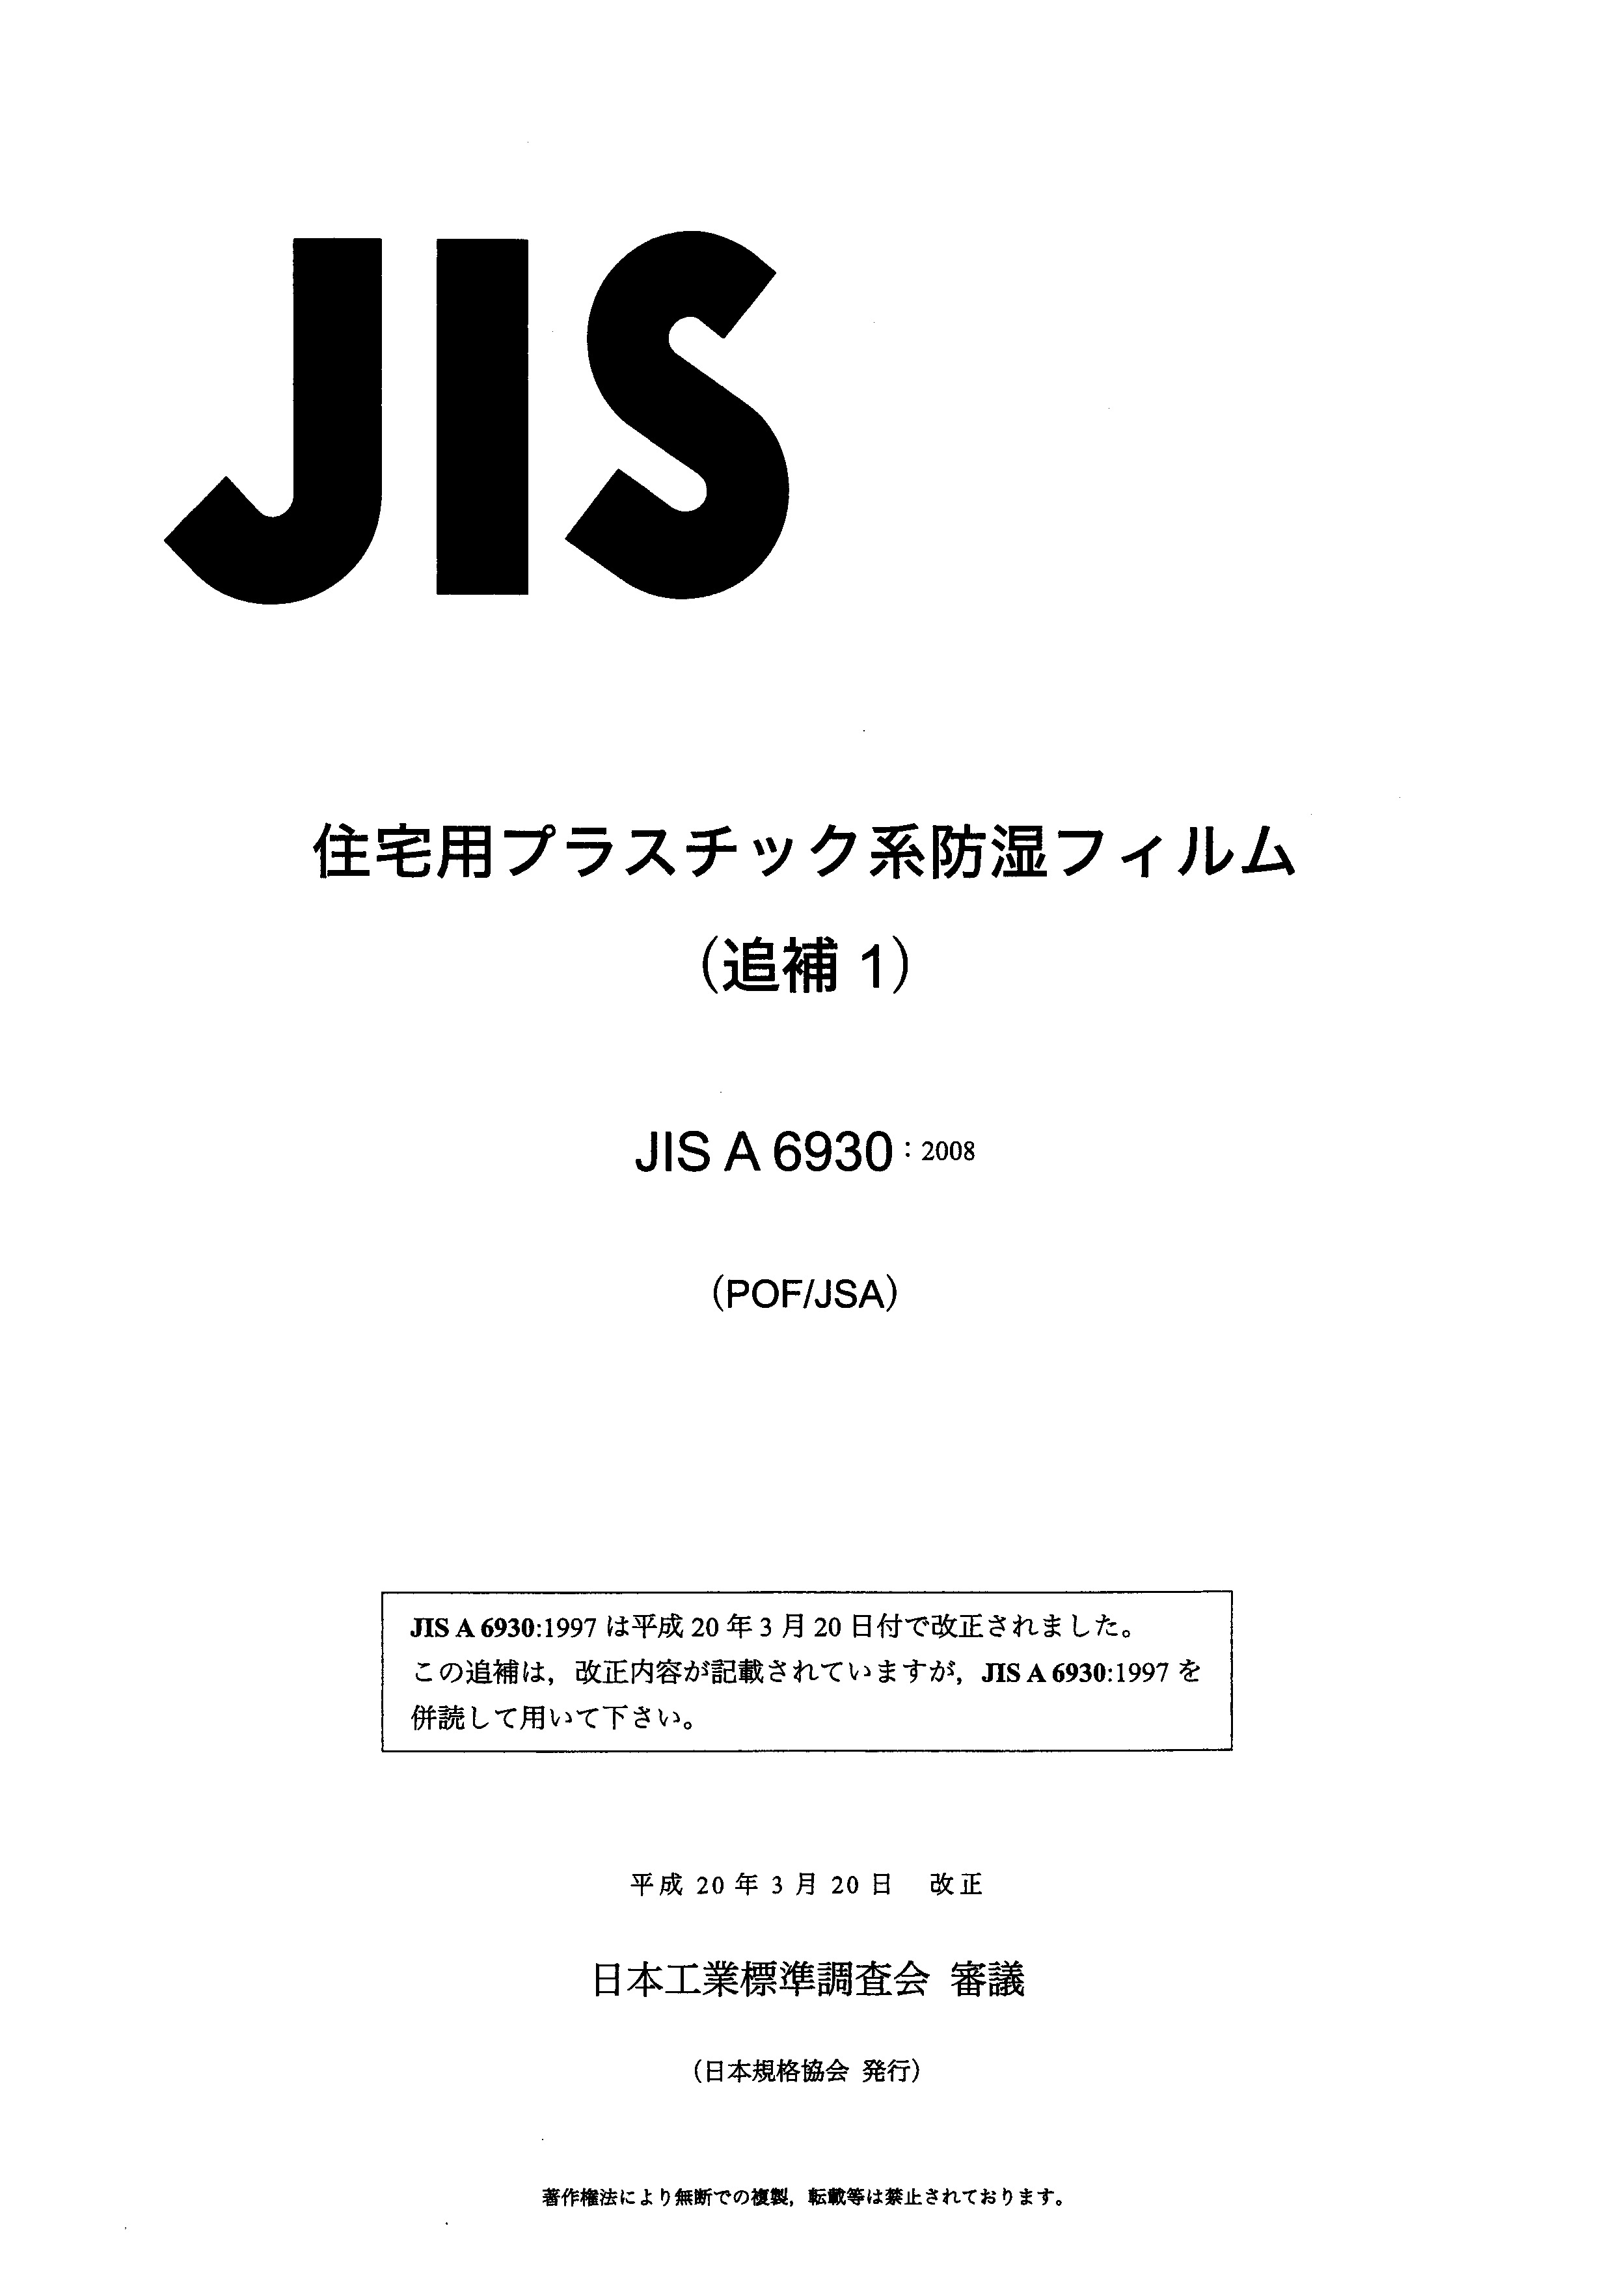 JIS A 6930 AMD 1:2008